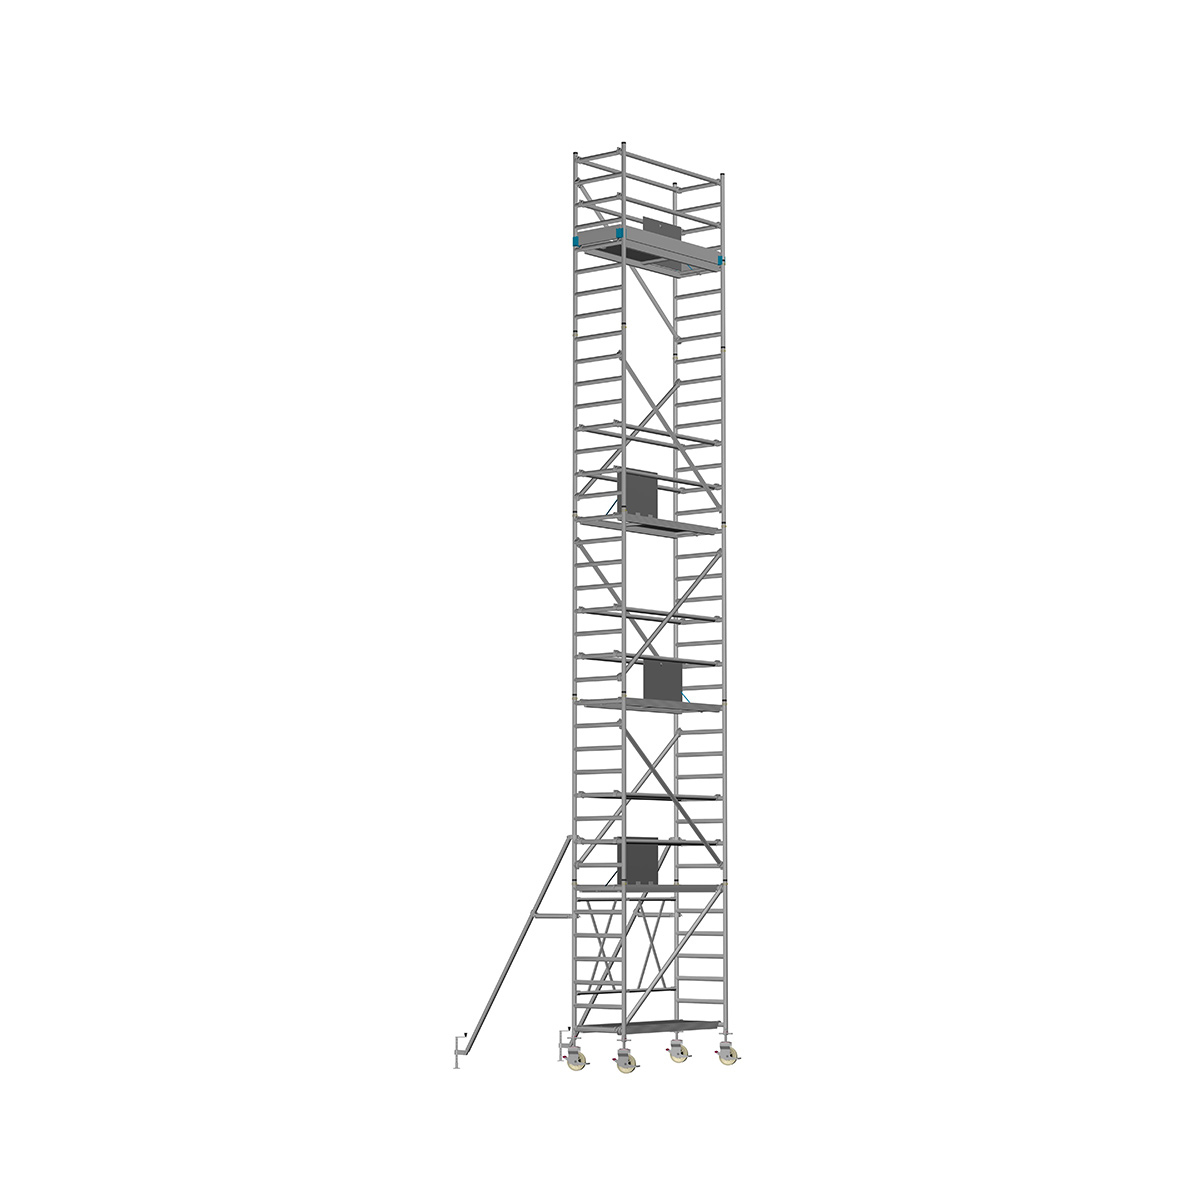 Chiemsee 2 PROFI- Länge: 2,54 m - Breite: 0,74 m, Standhöhe 11,00 m